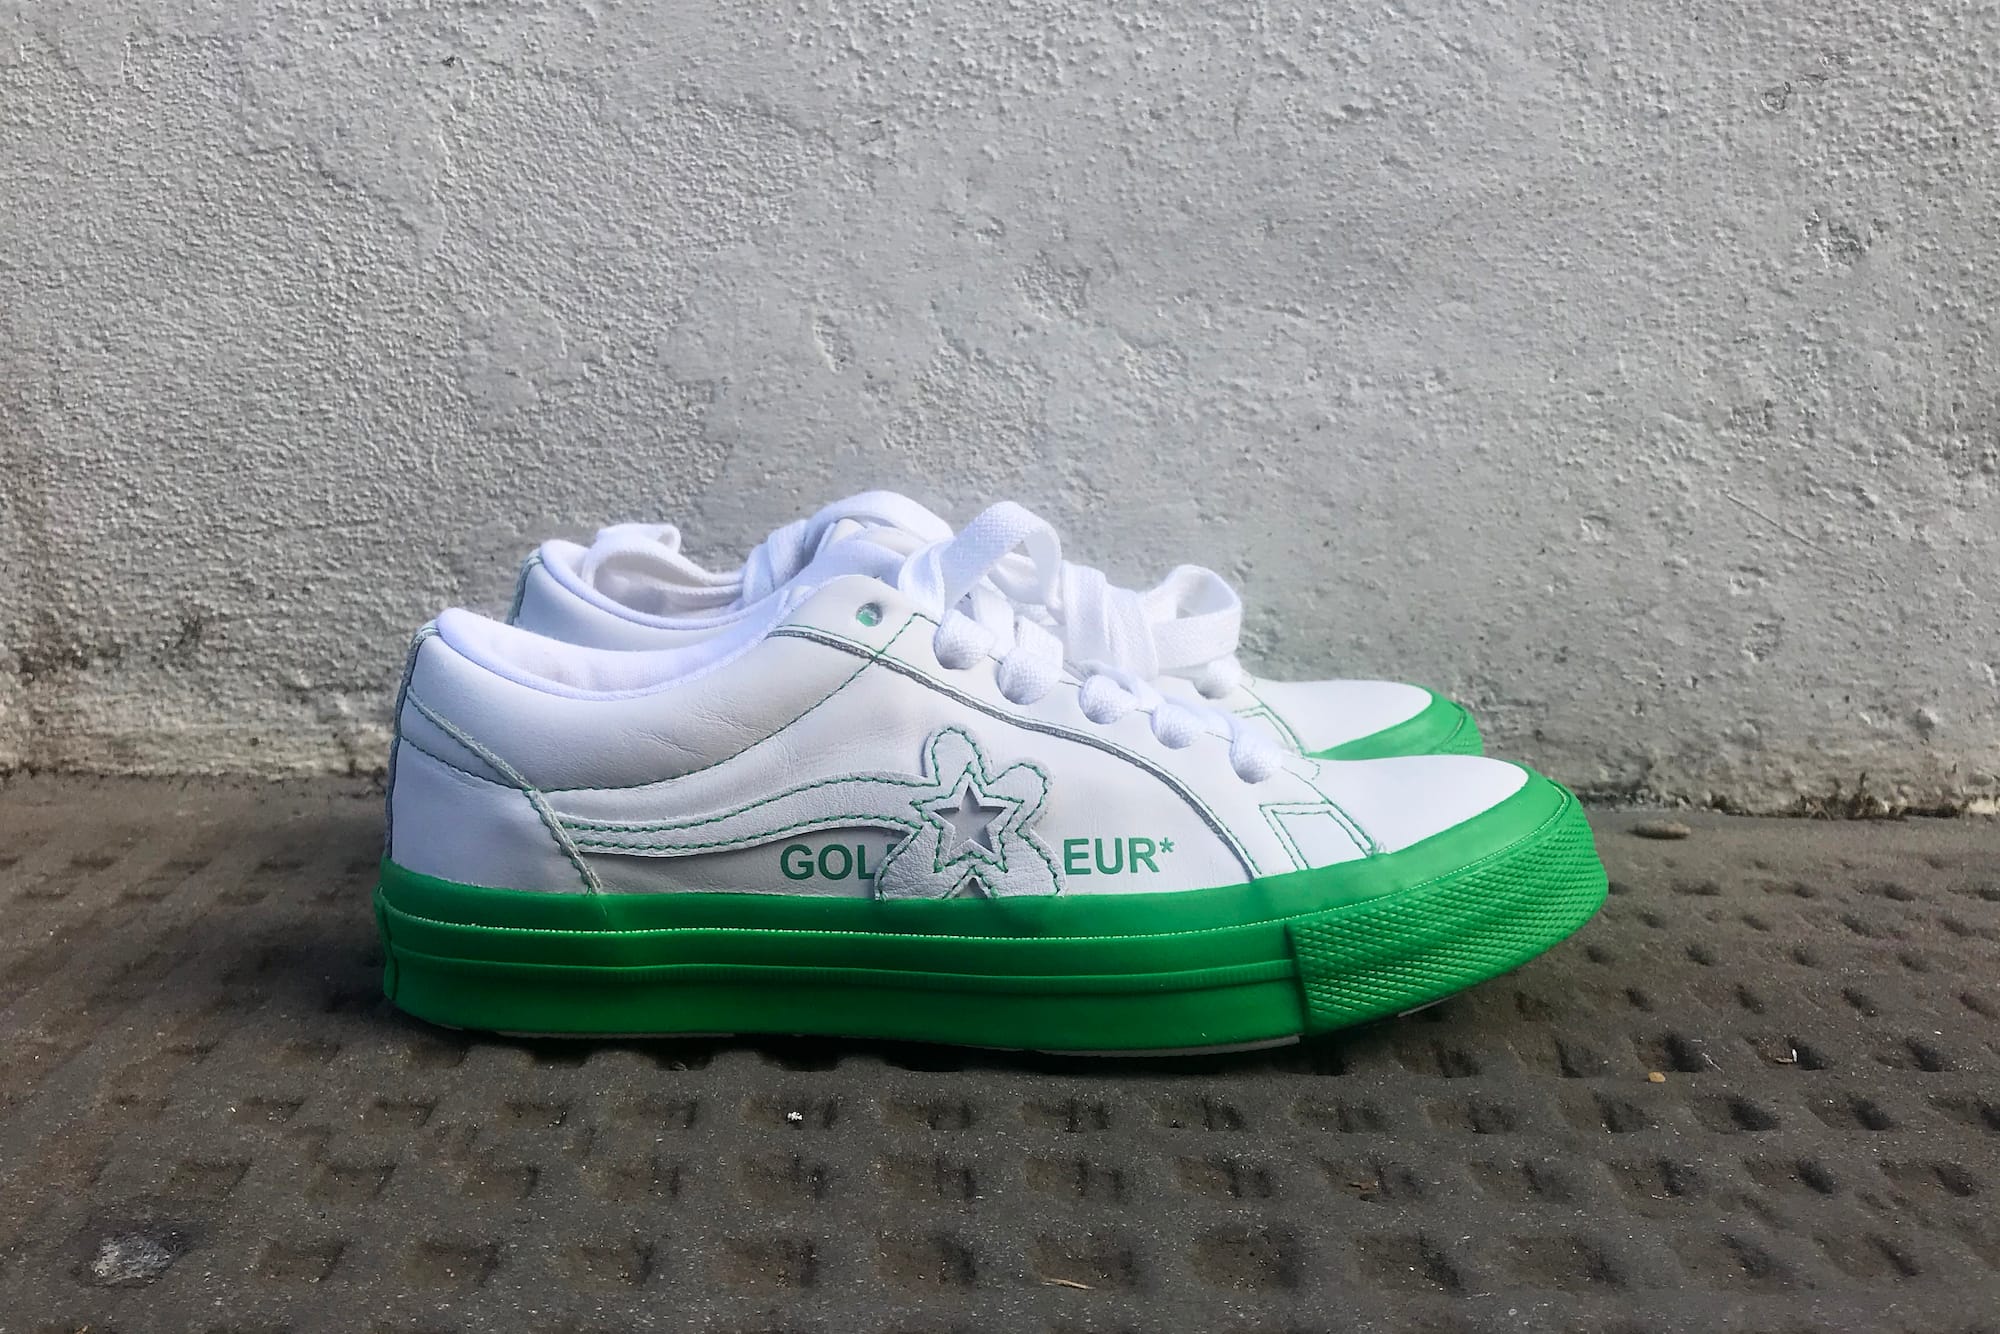 white golf le fleur shoes